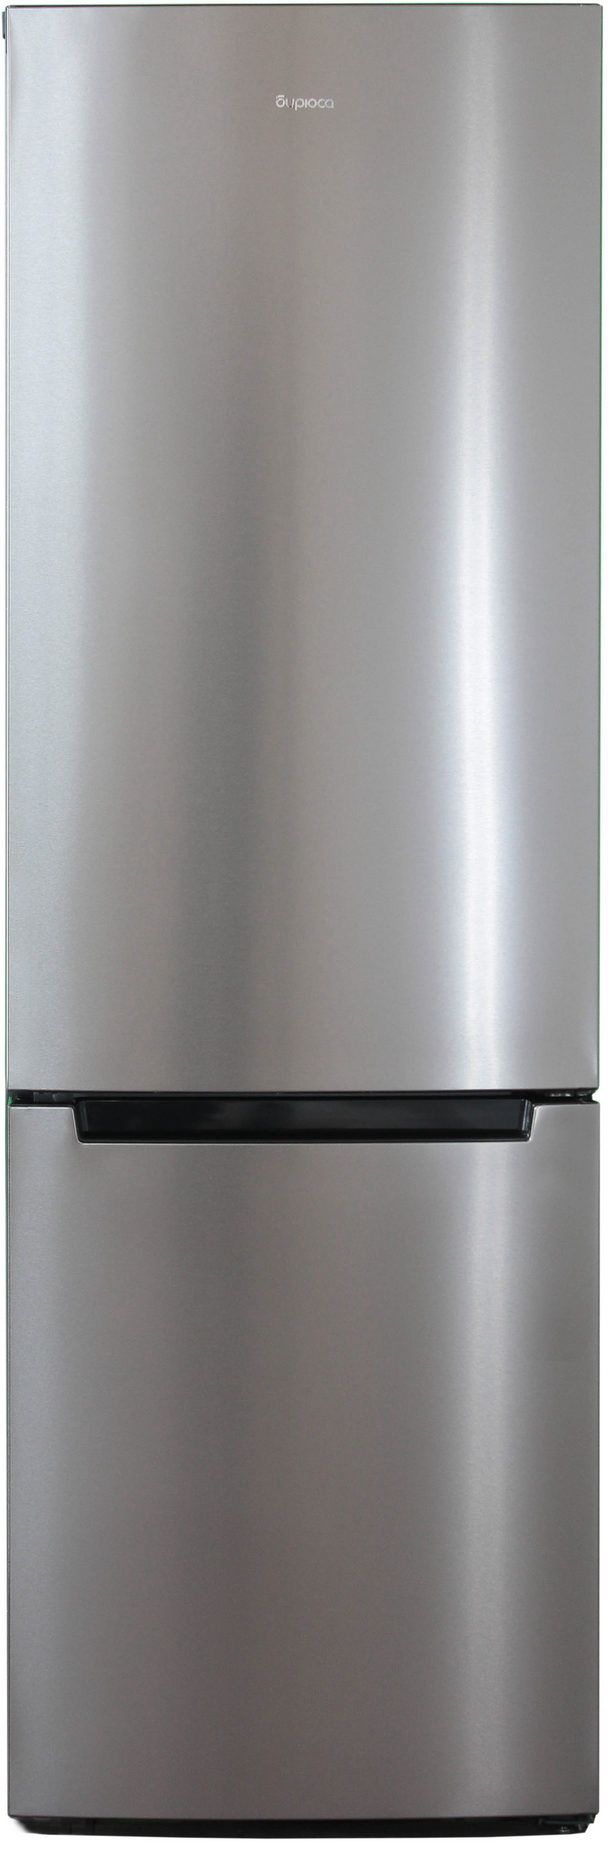 холодильник бирюса 860nf, купить в Красноярске холодильник бирюса 860nf,  купить в Красноярске дешево холодильник бирюса 860nf, купить в Красноярске минимальной цене холодильник бирюса 860nf